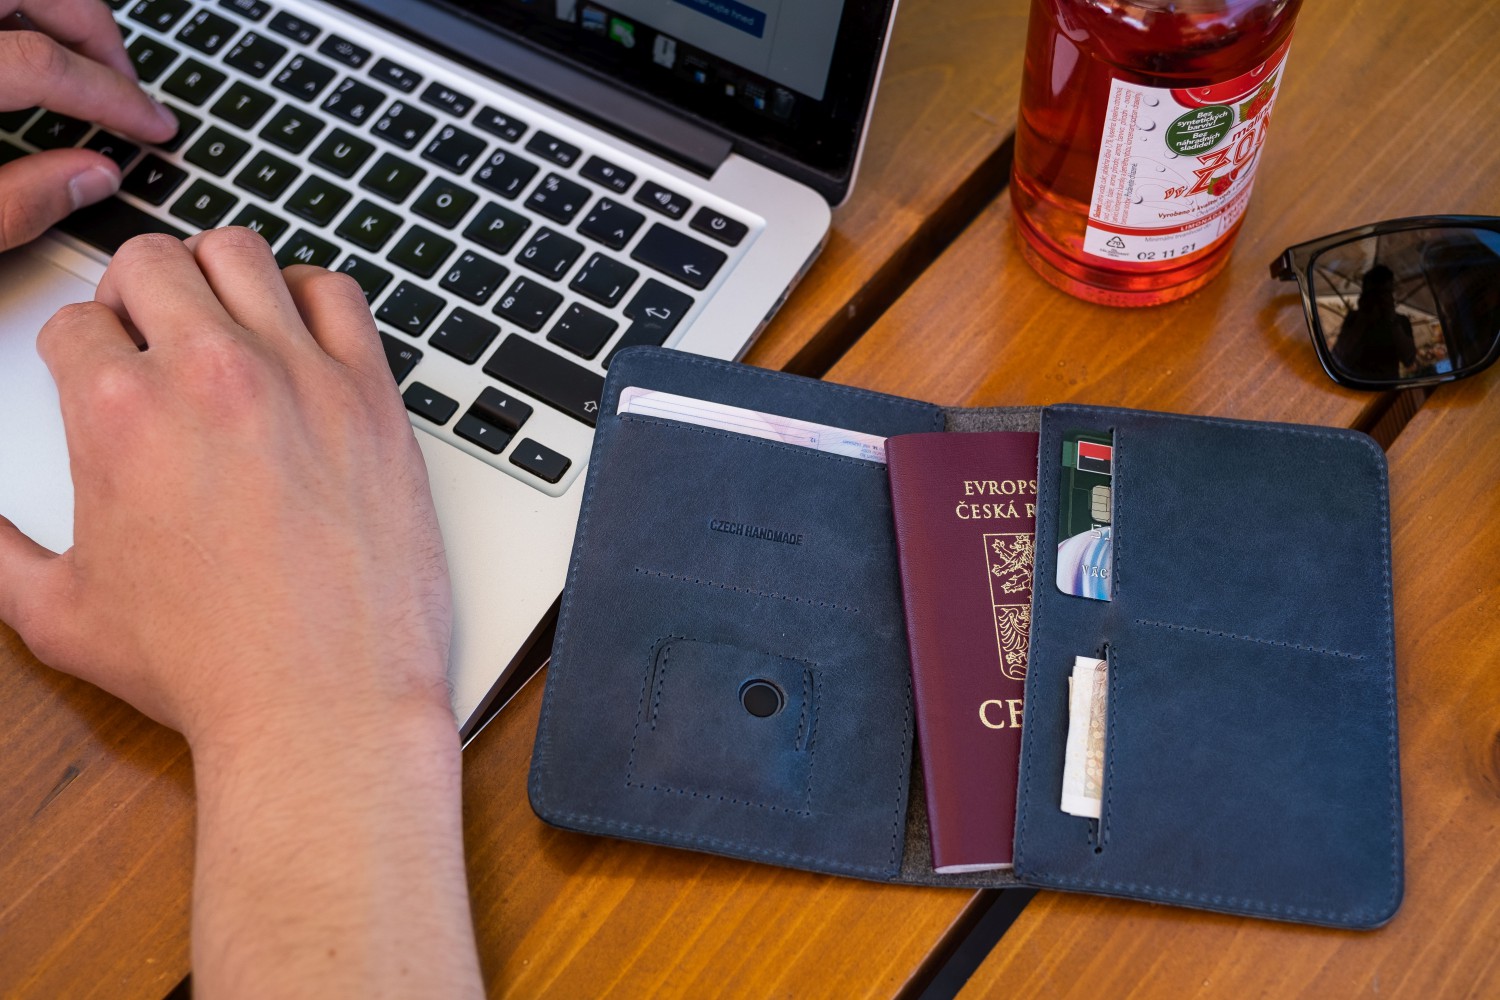 Kožená peněženka FIXED Smile Passport se smart trackerem FIXED Smile PRO, modrá